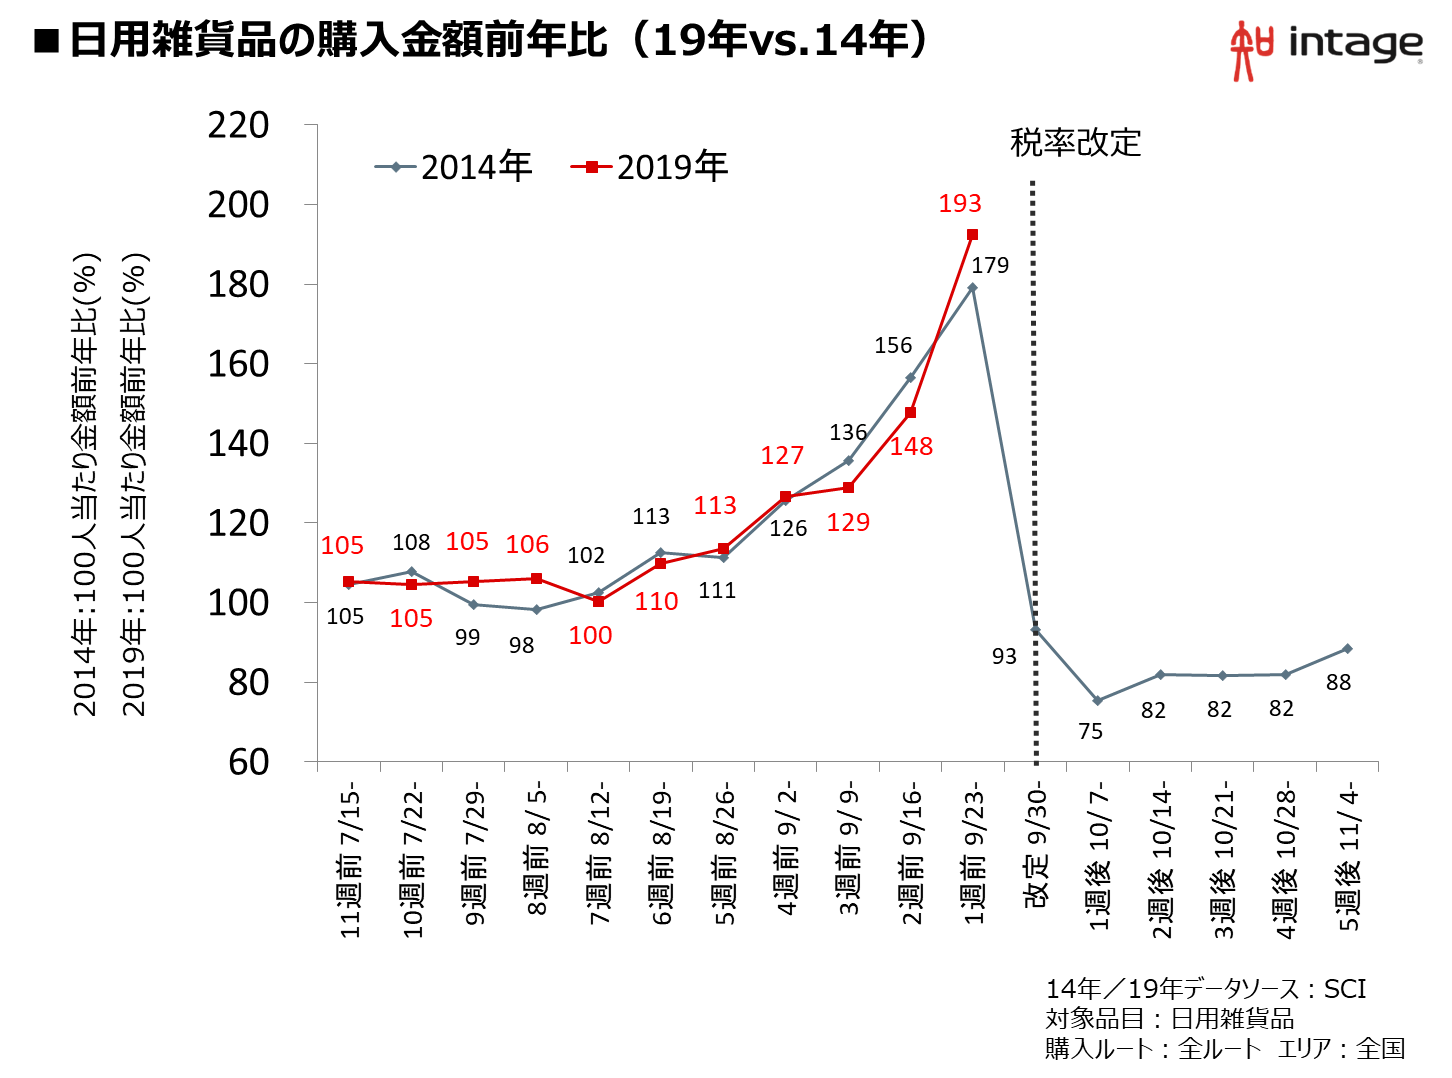 日用雑貨品の購入金額前年比（19年vs.14年）